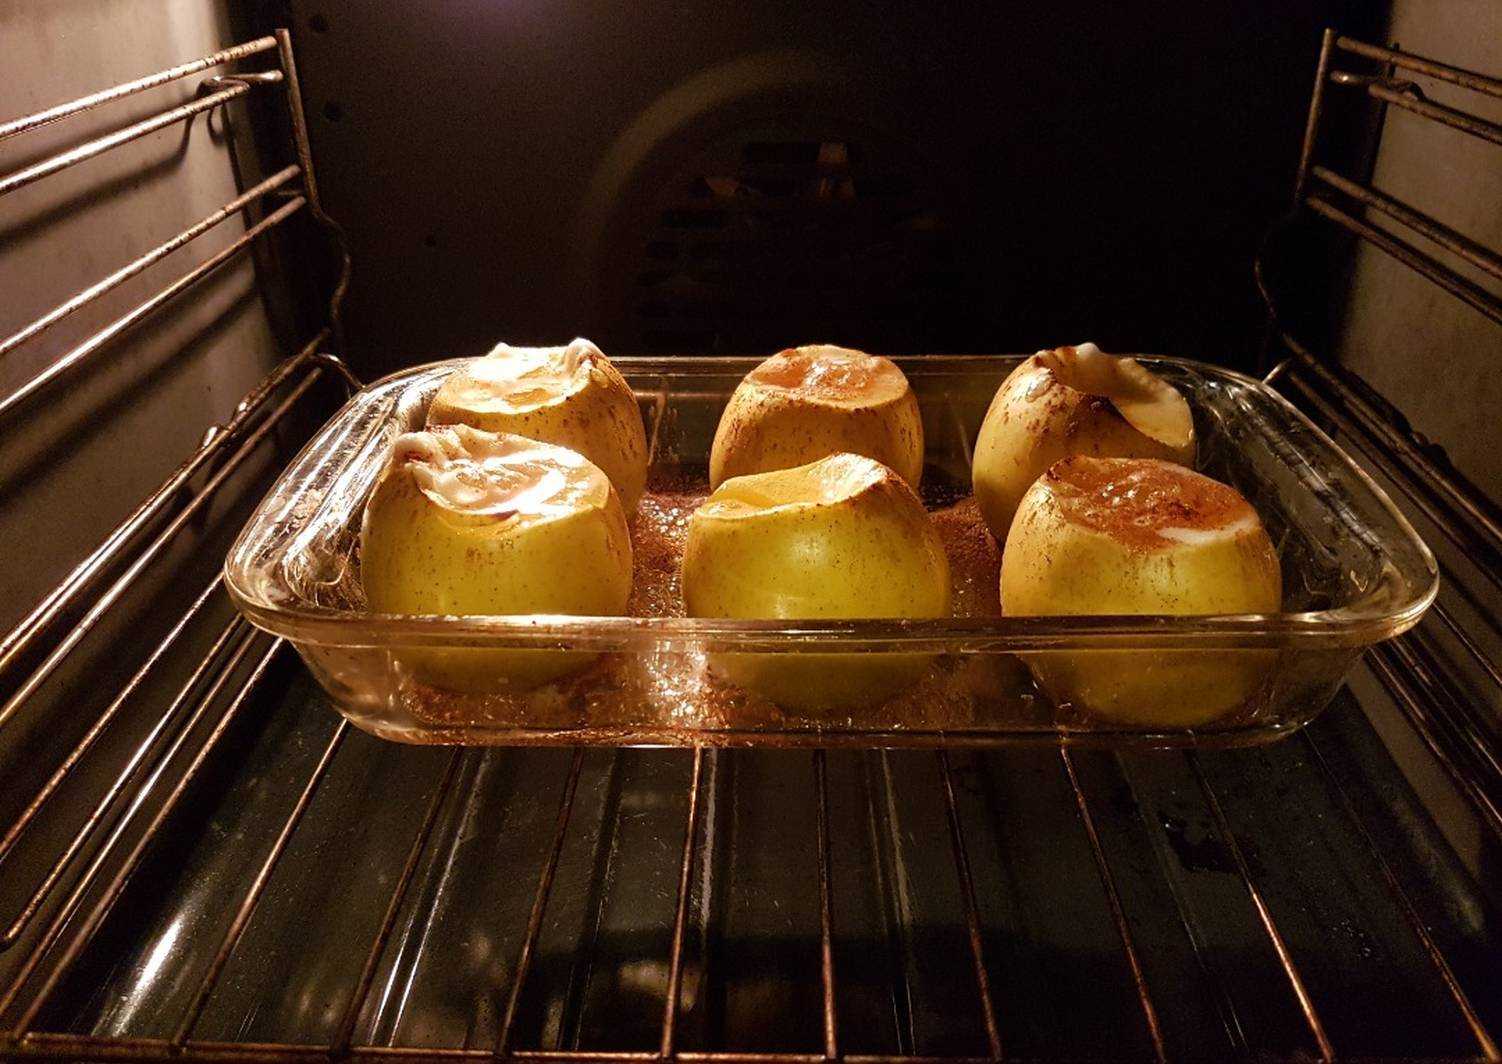 Рецепты печеное в духовке. Яблоки в духовке. Печёные яблоки в духовке. Запечённые яблоки в духовке с мёдом. Ялокизапеченыевдуховке.